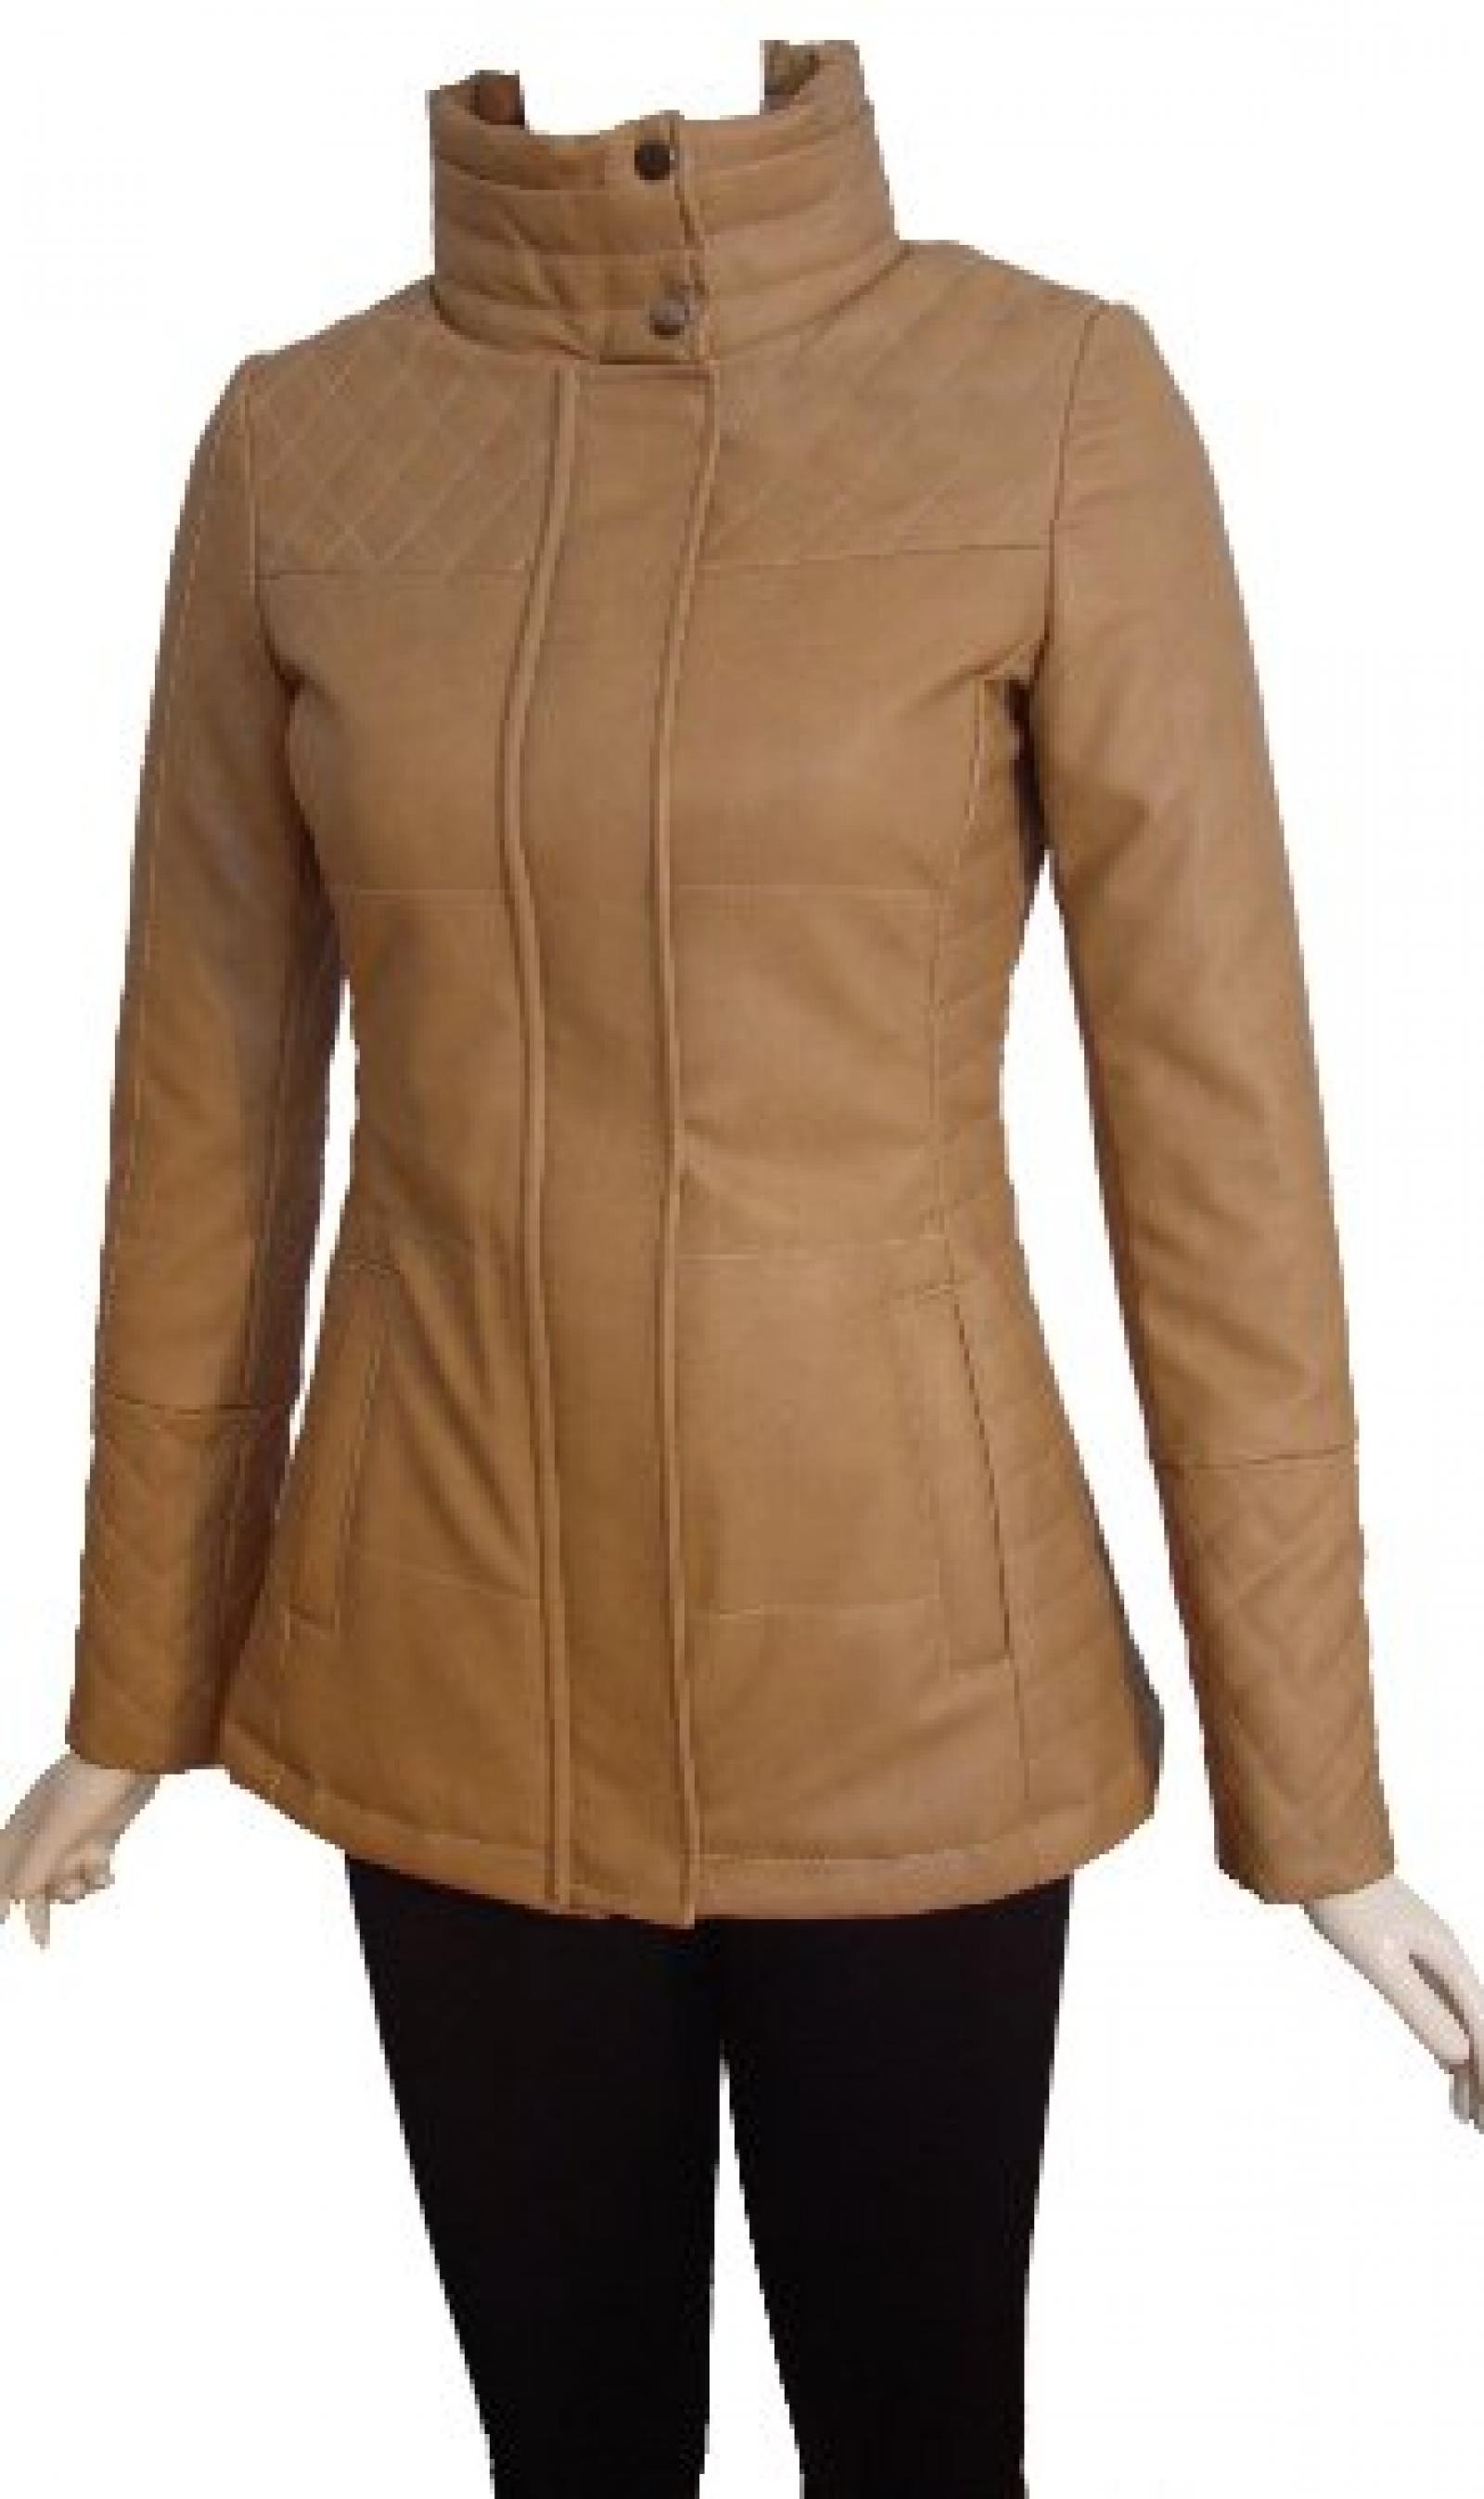 Nettailor Women PETITE SZ 4204 Leather Casual Jacket Placket Welt Pocket Quilt 